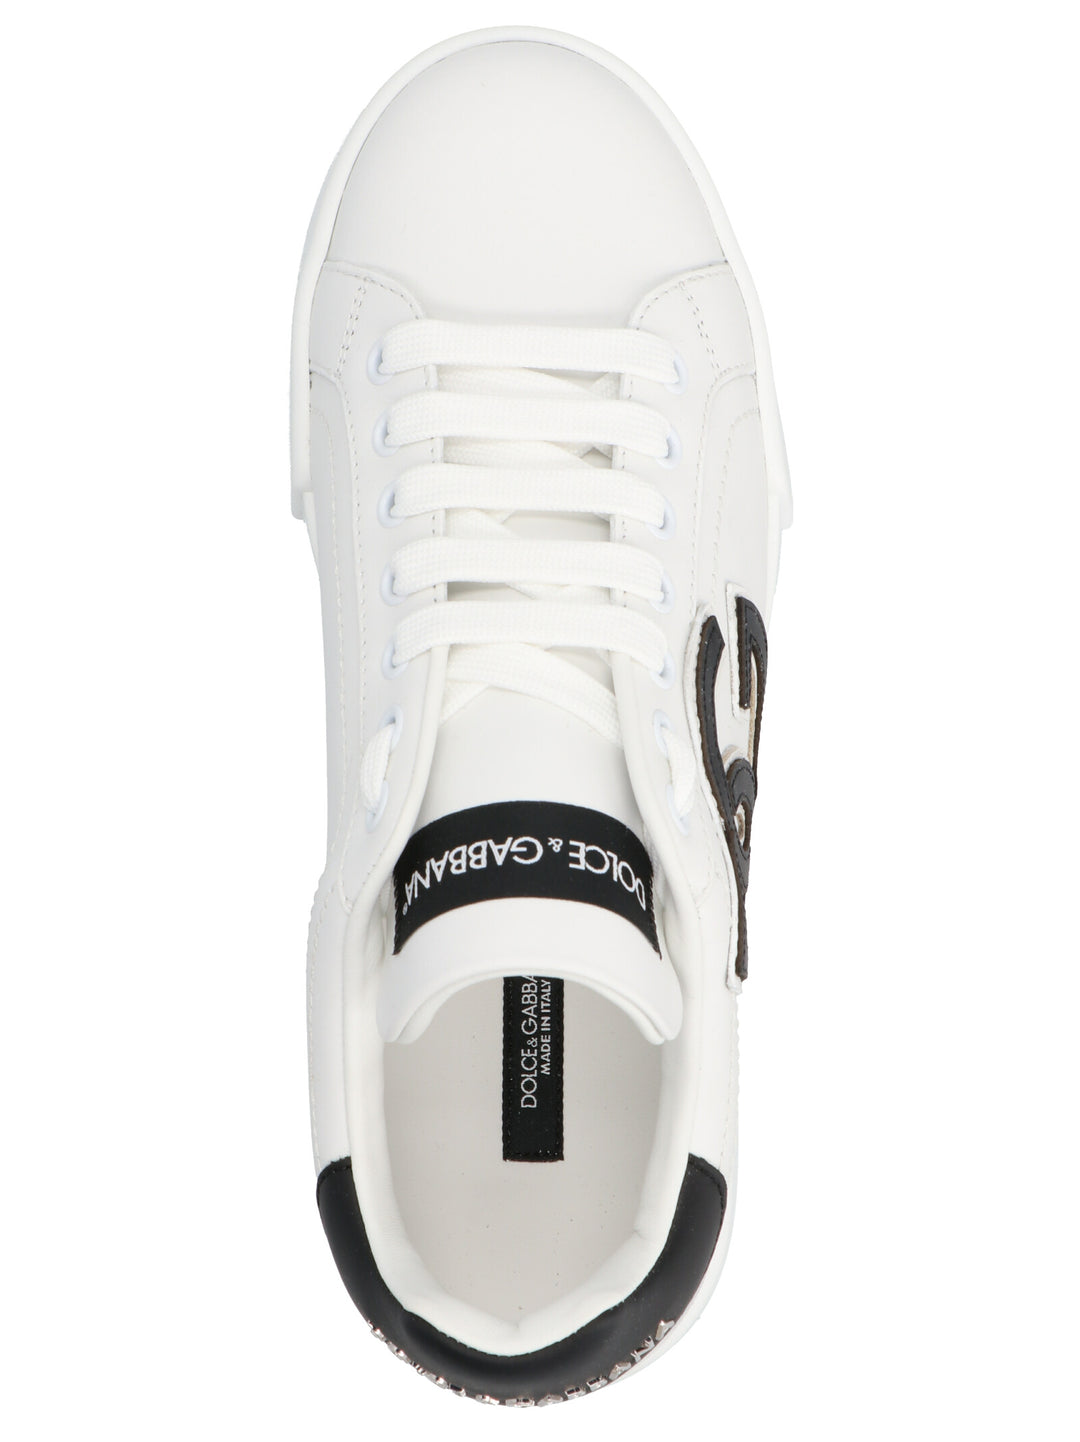 'Portofino' Sneakers Bianco/nero